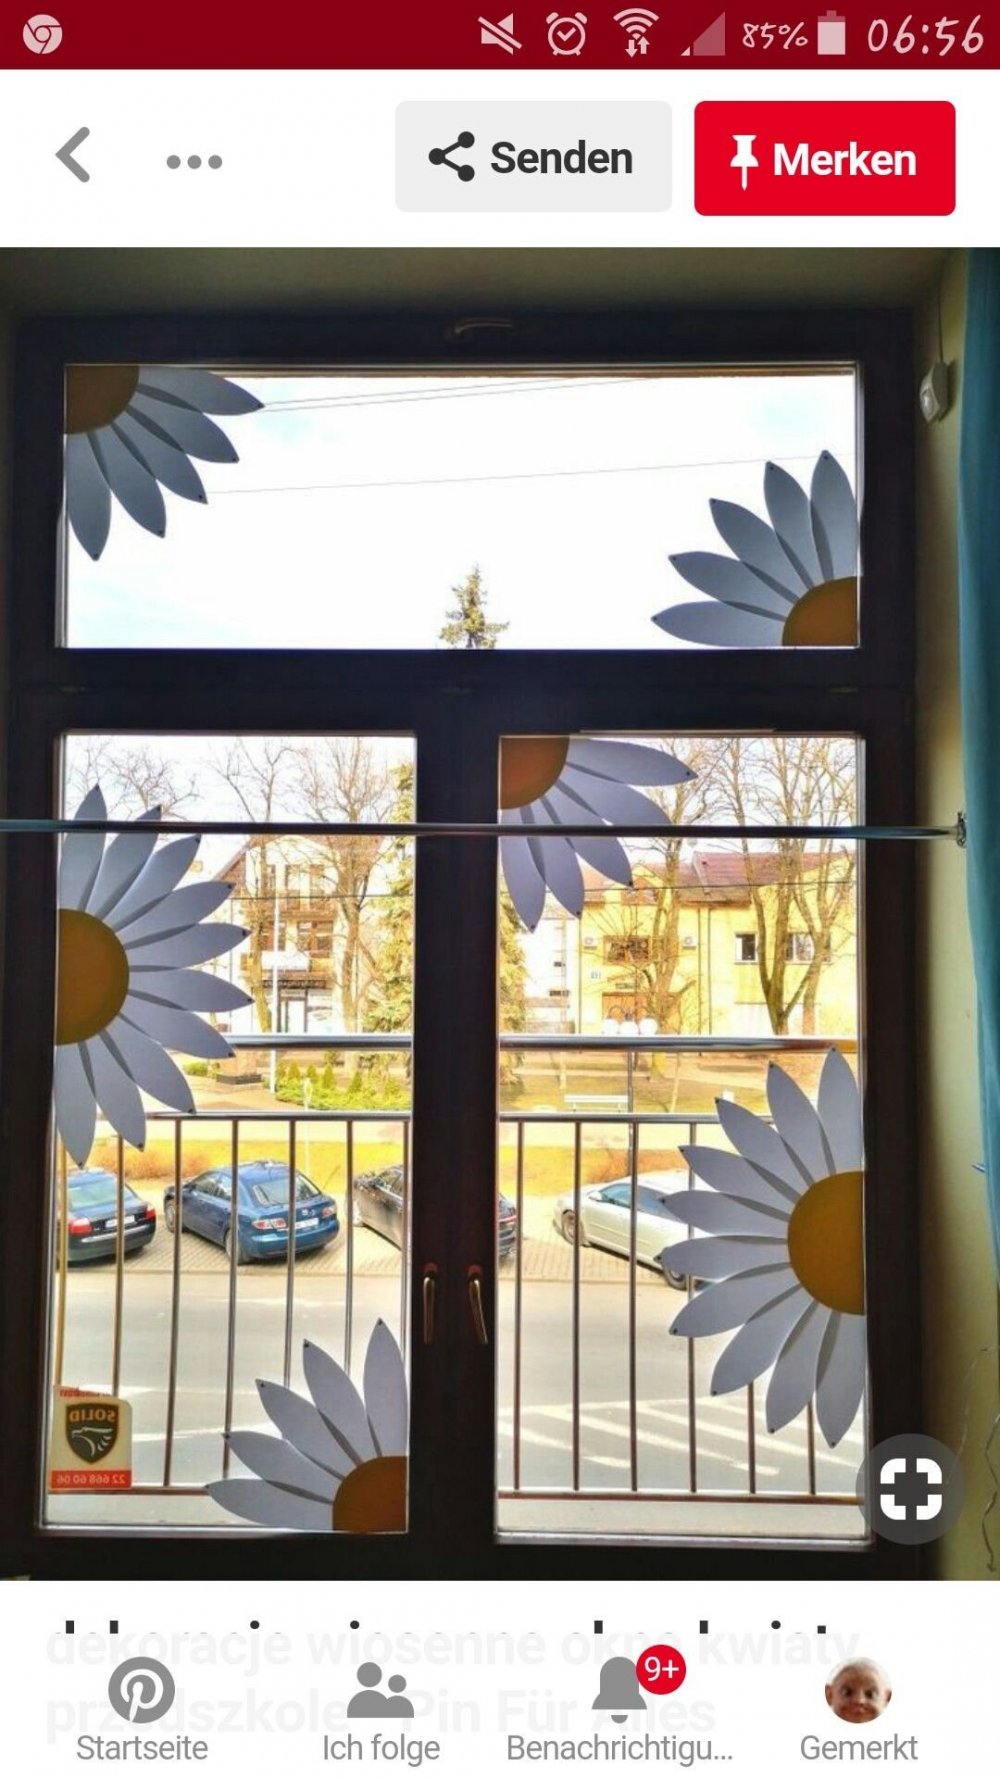 Весеннее украшение окон в детском саду